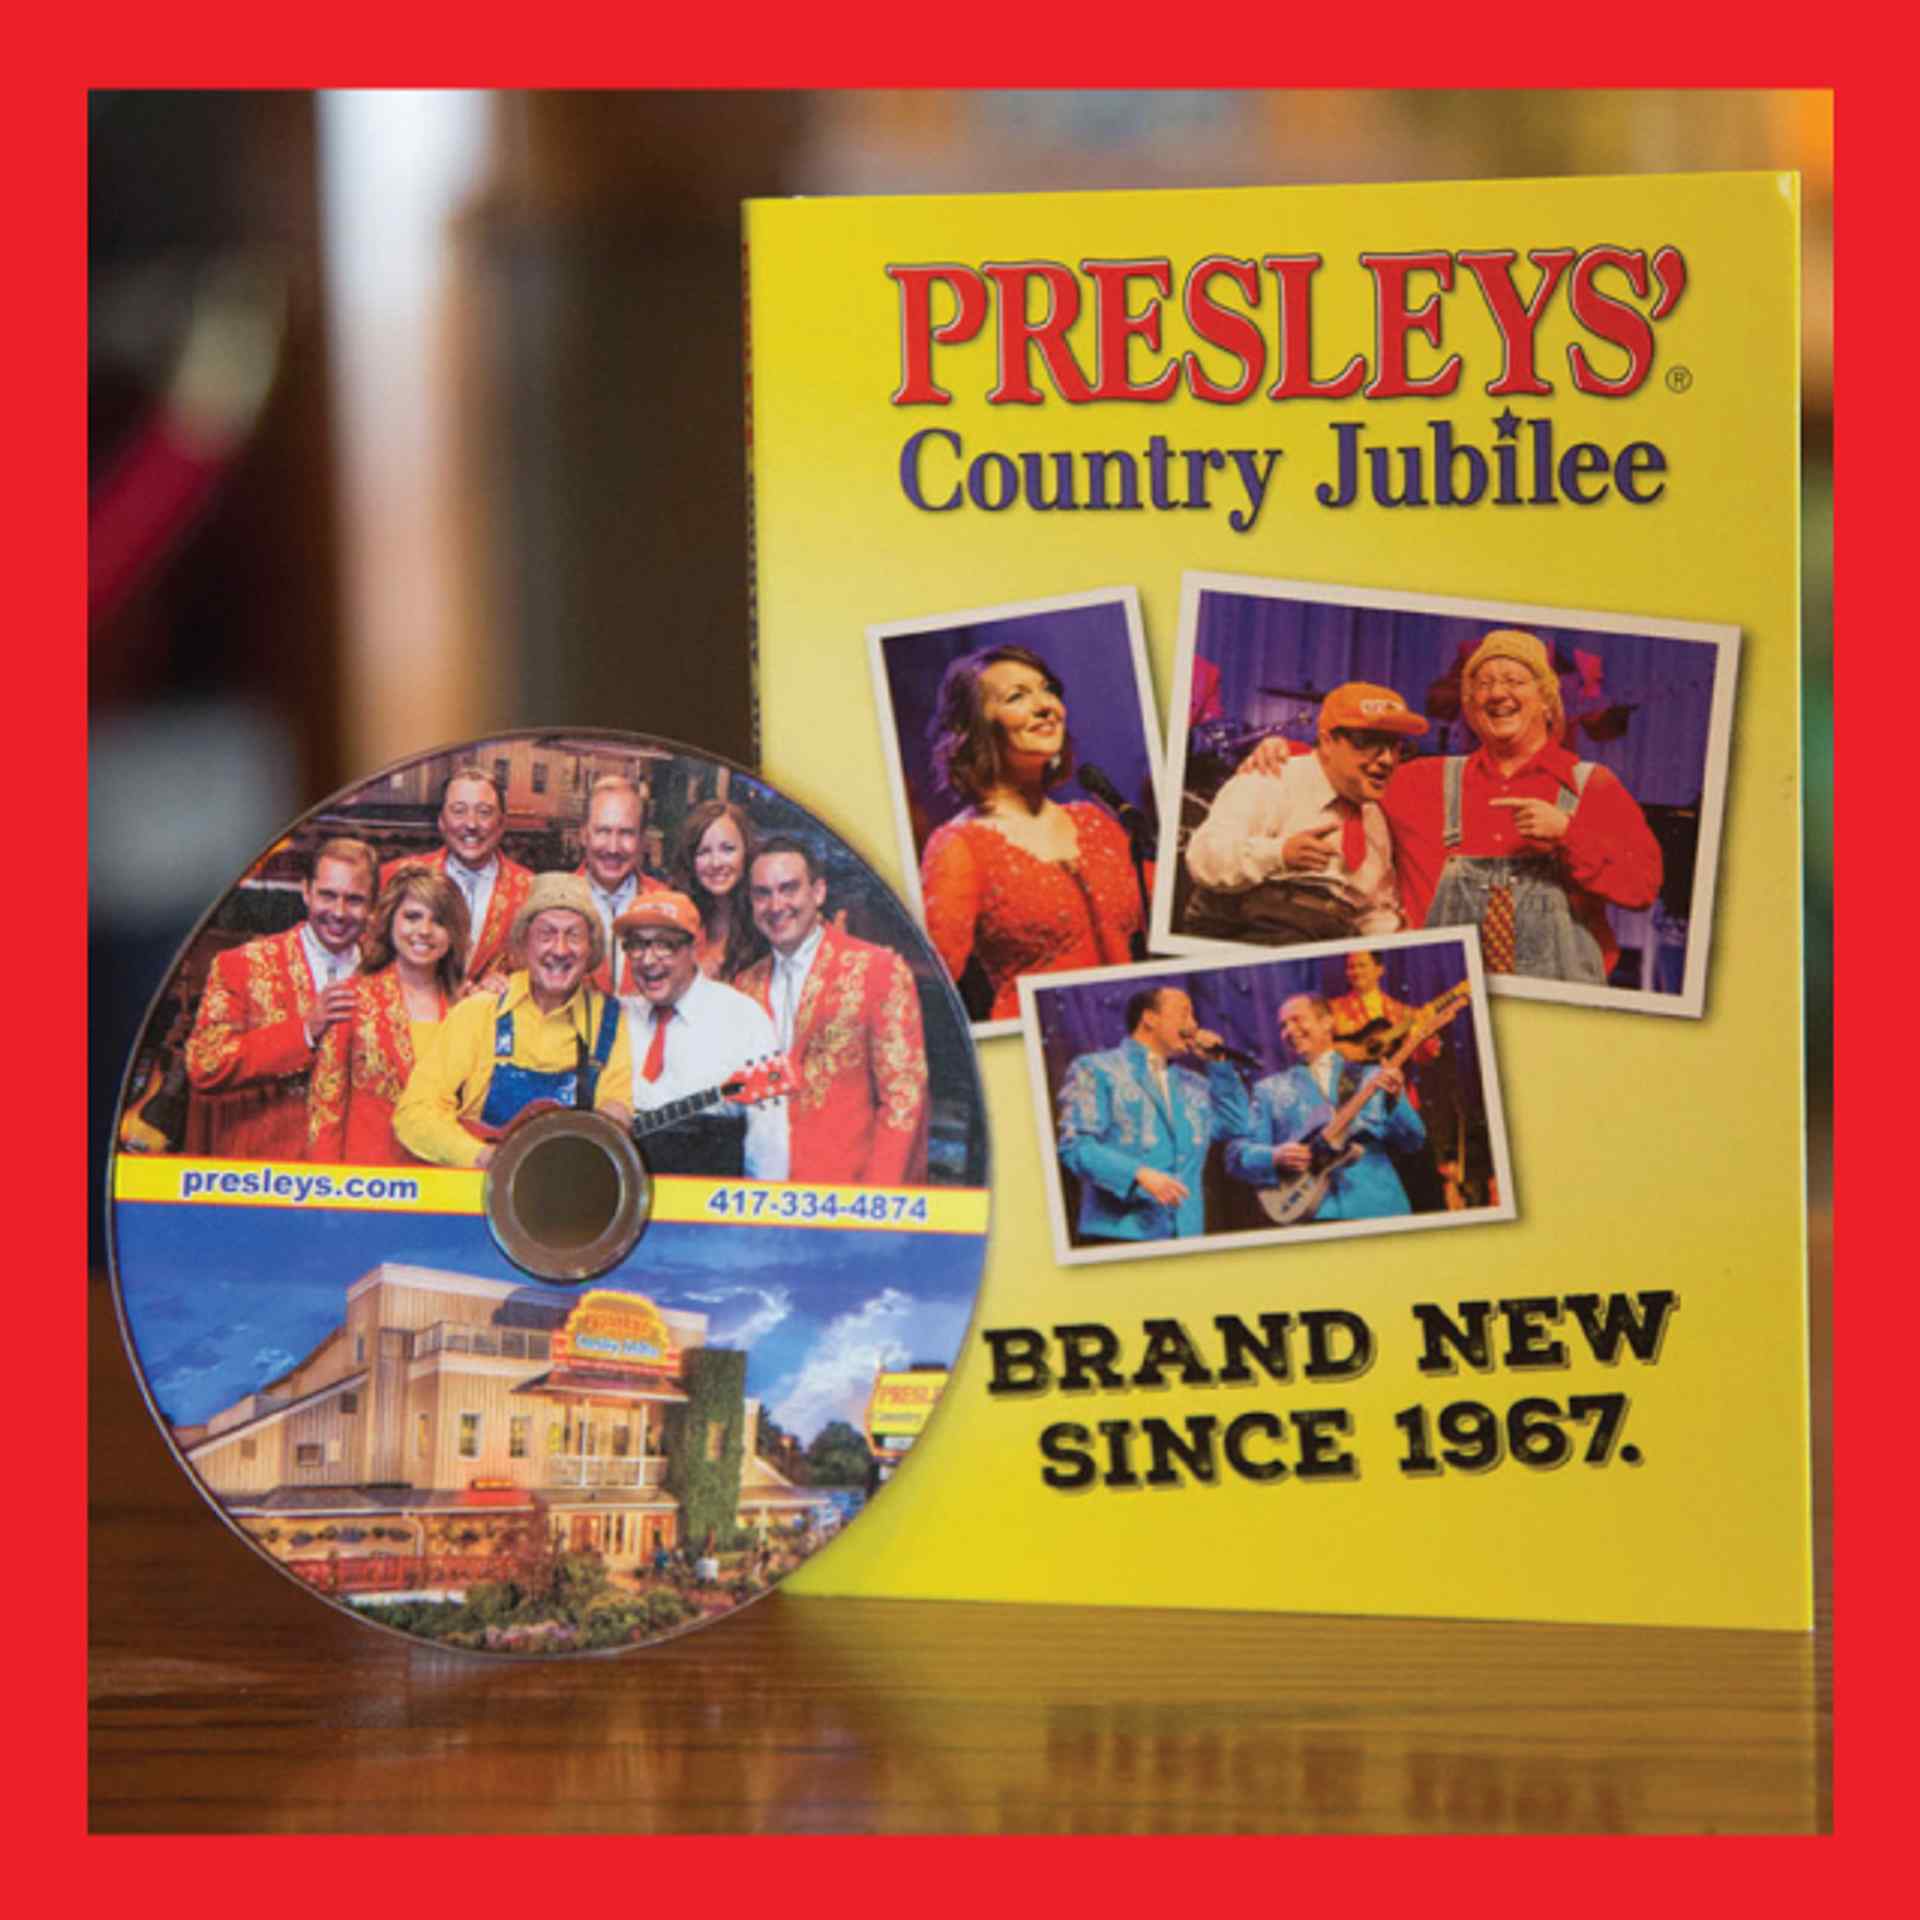 Presleys' Country Jubilee